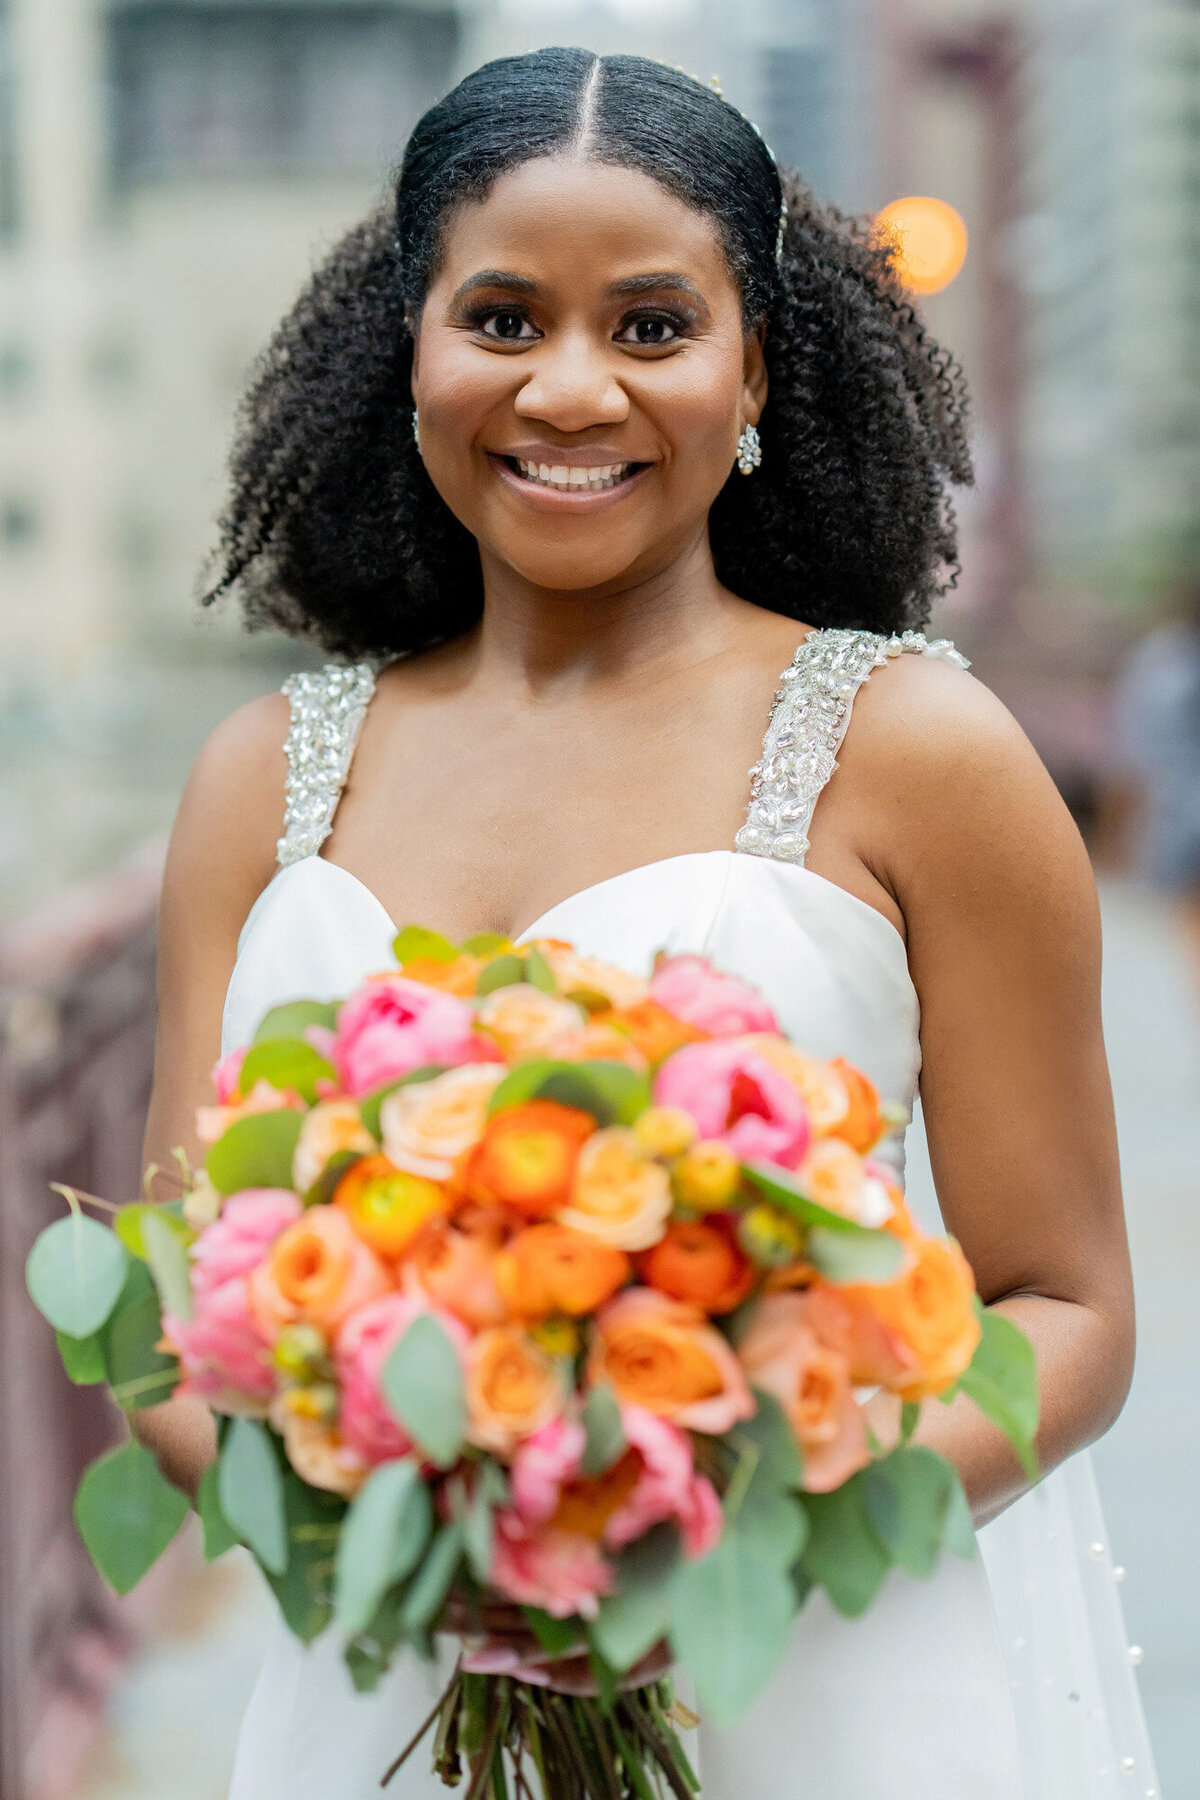 Behind-The-Veil-Black-Wedding-in-Chicago-Dericka-bridal-portrait